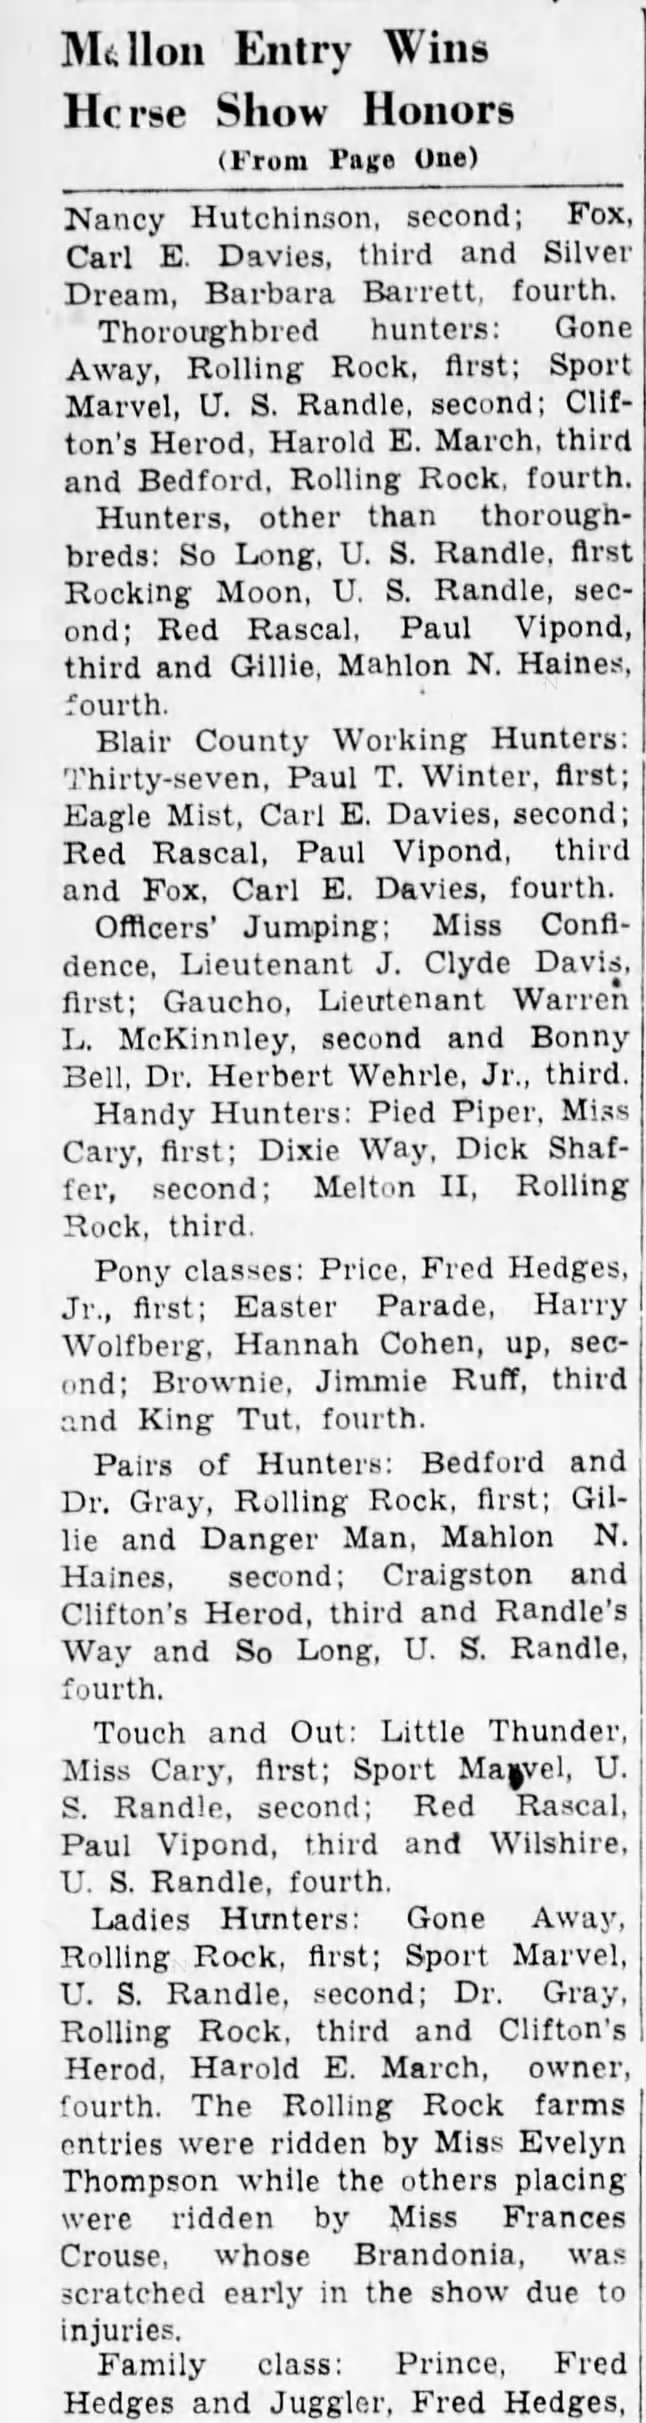 Part 2-Horse Show-6 Sept 1938